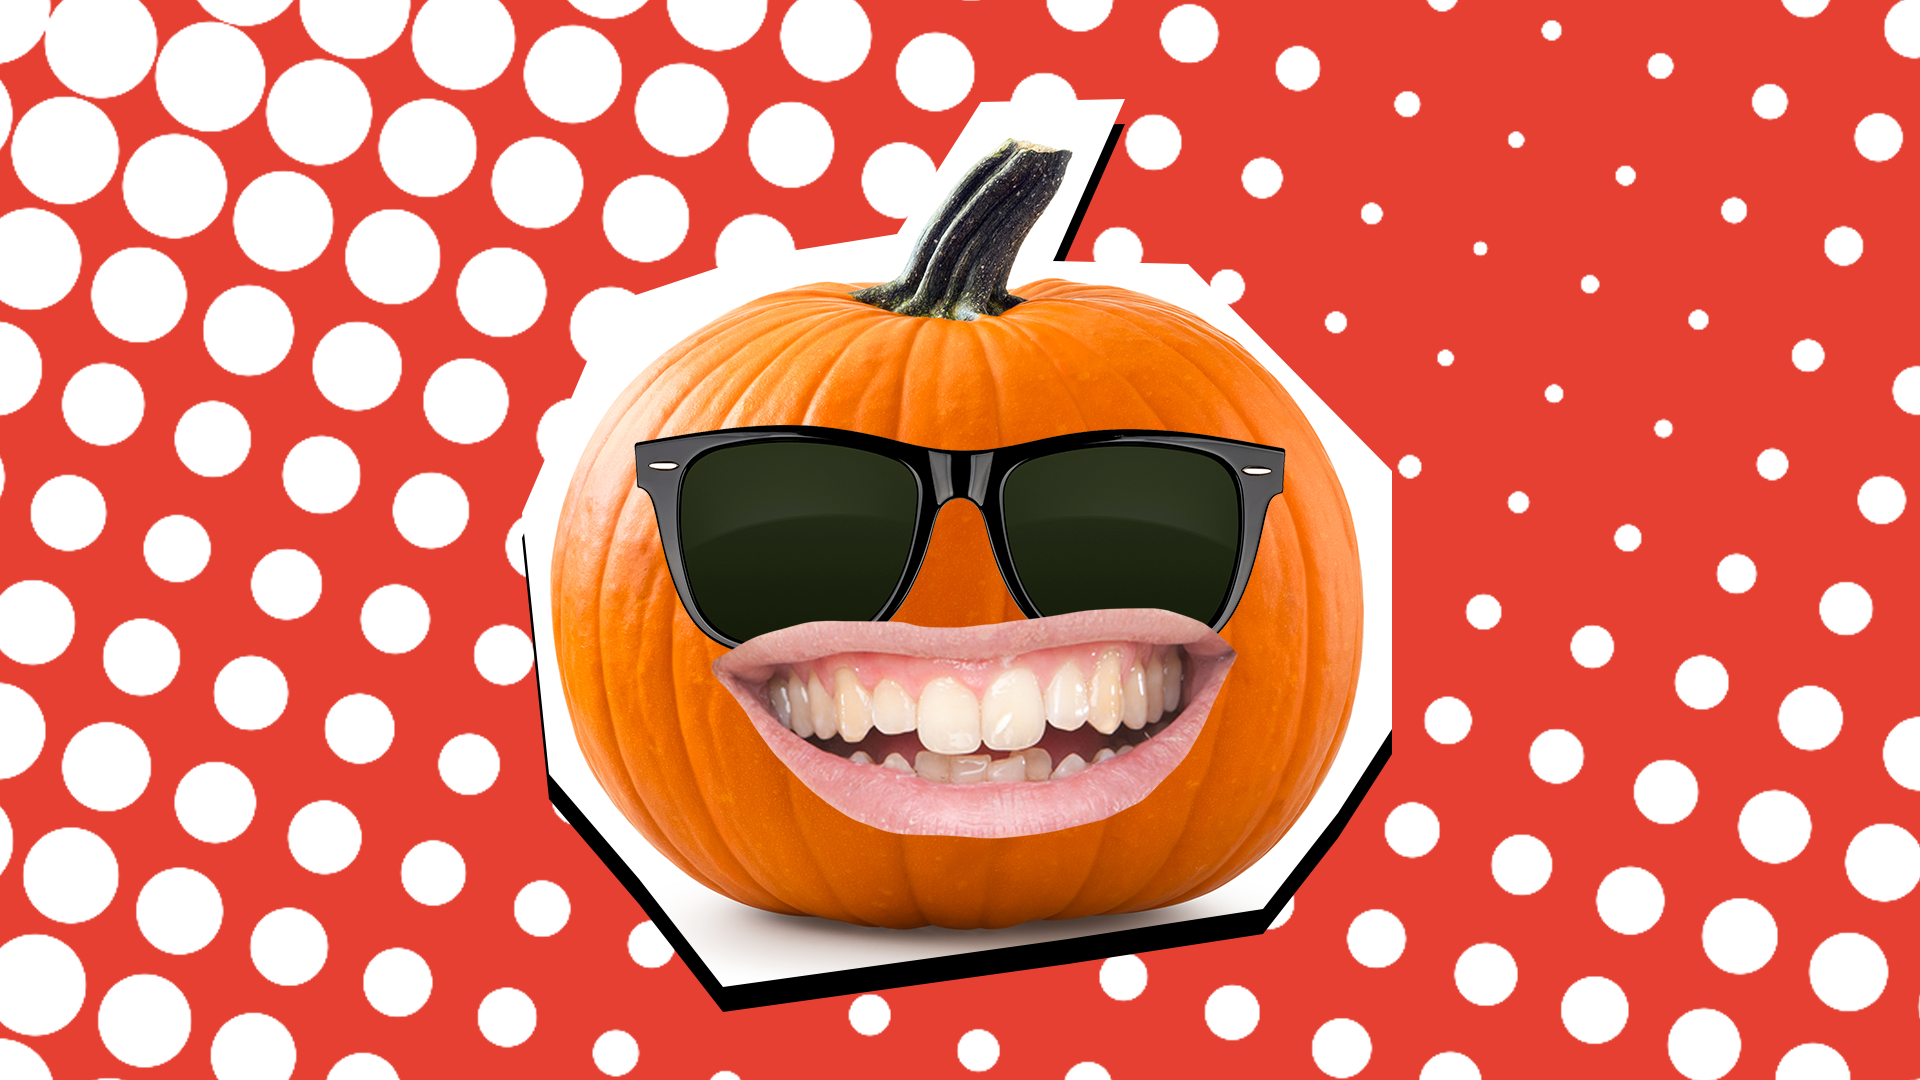 Pumpkin in sunglasses